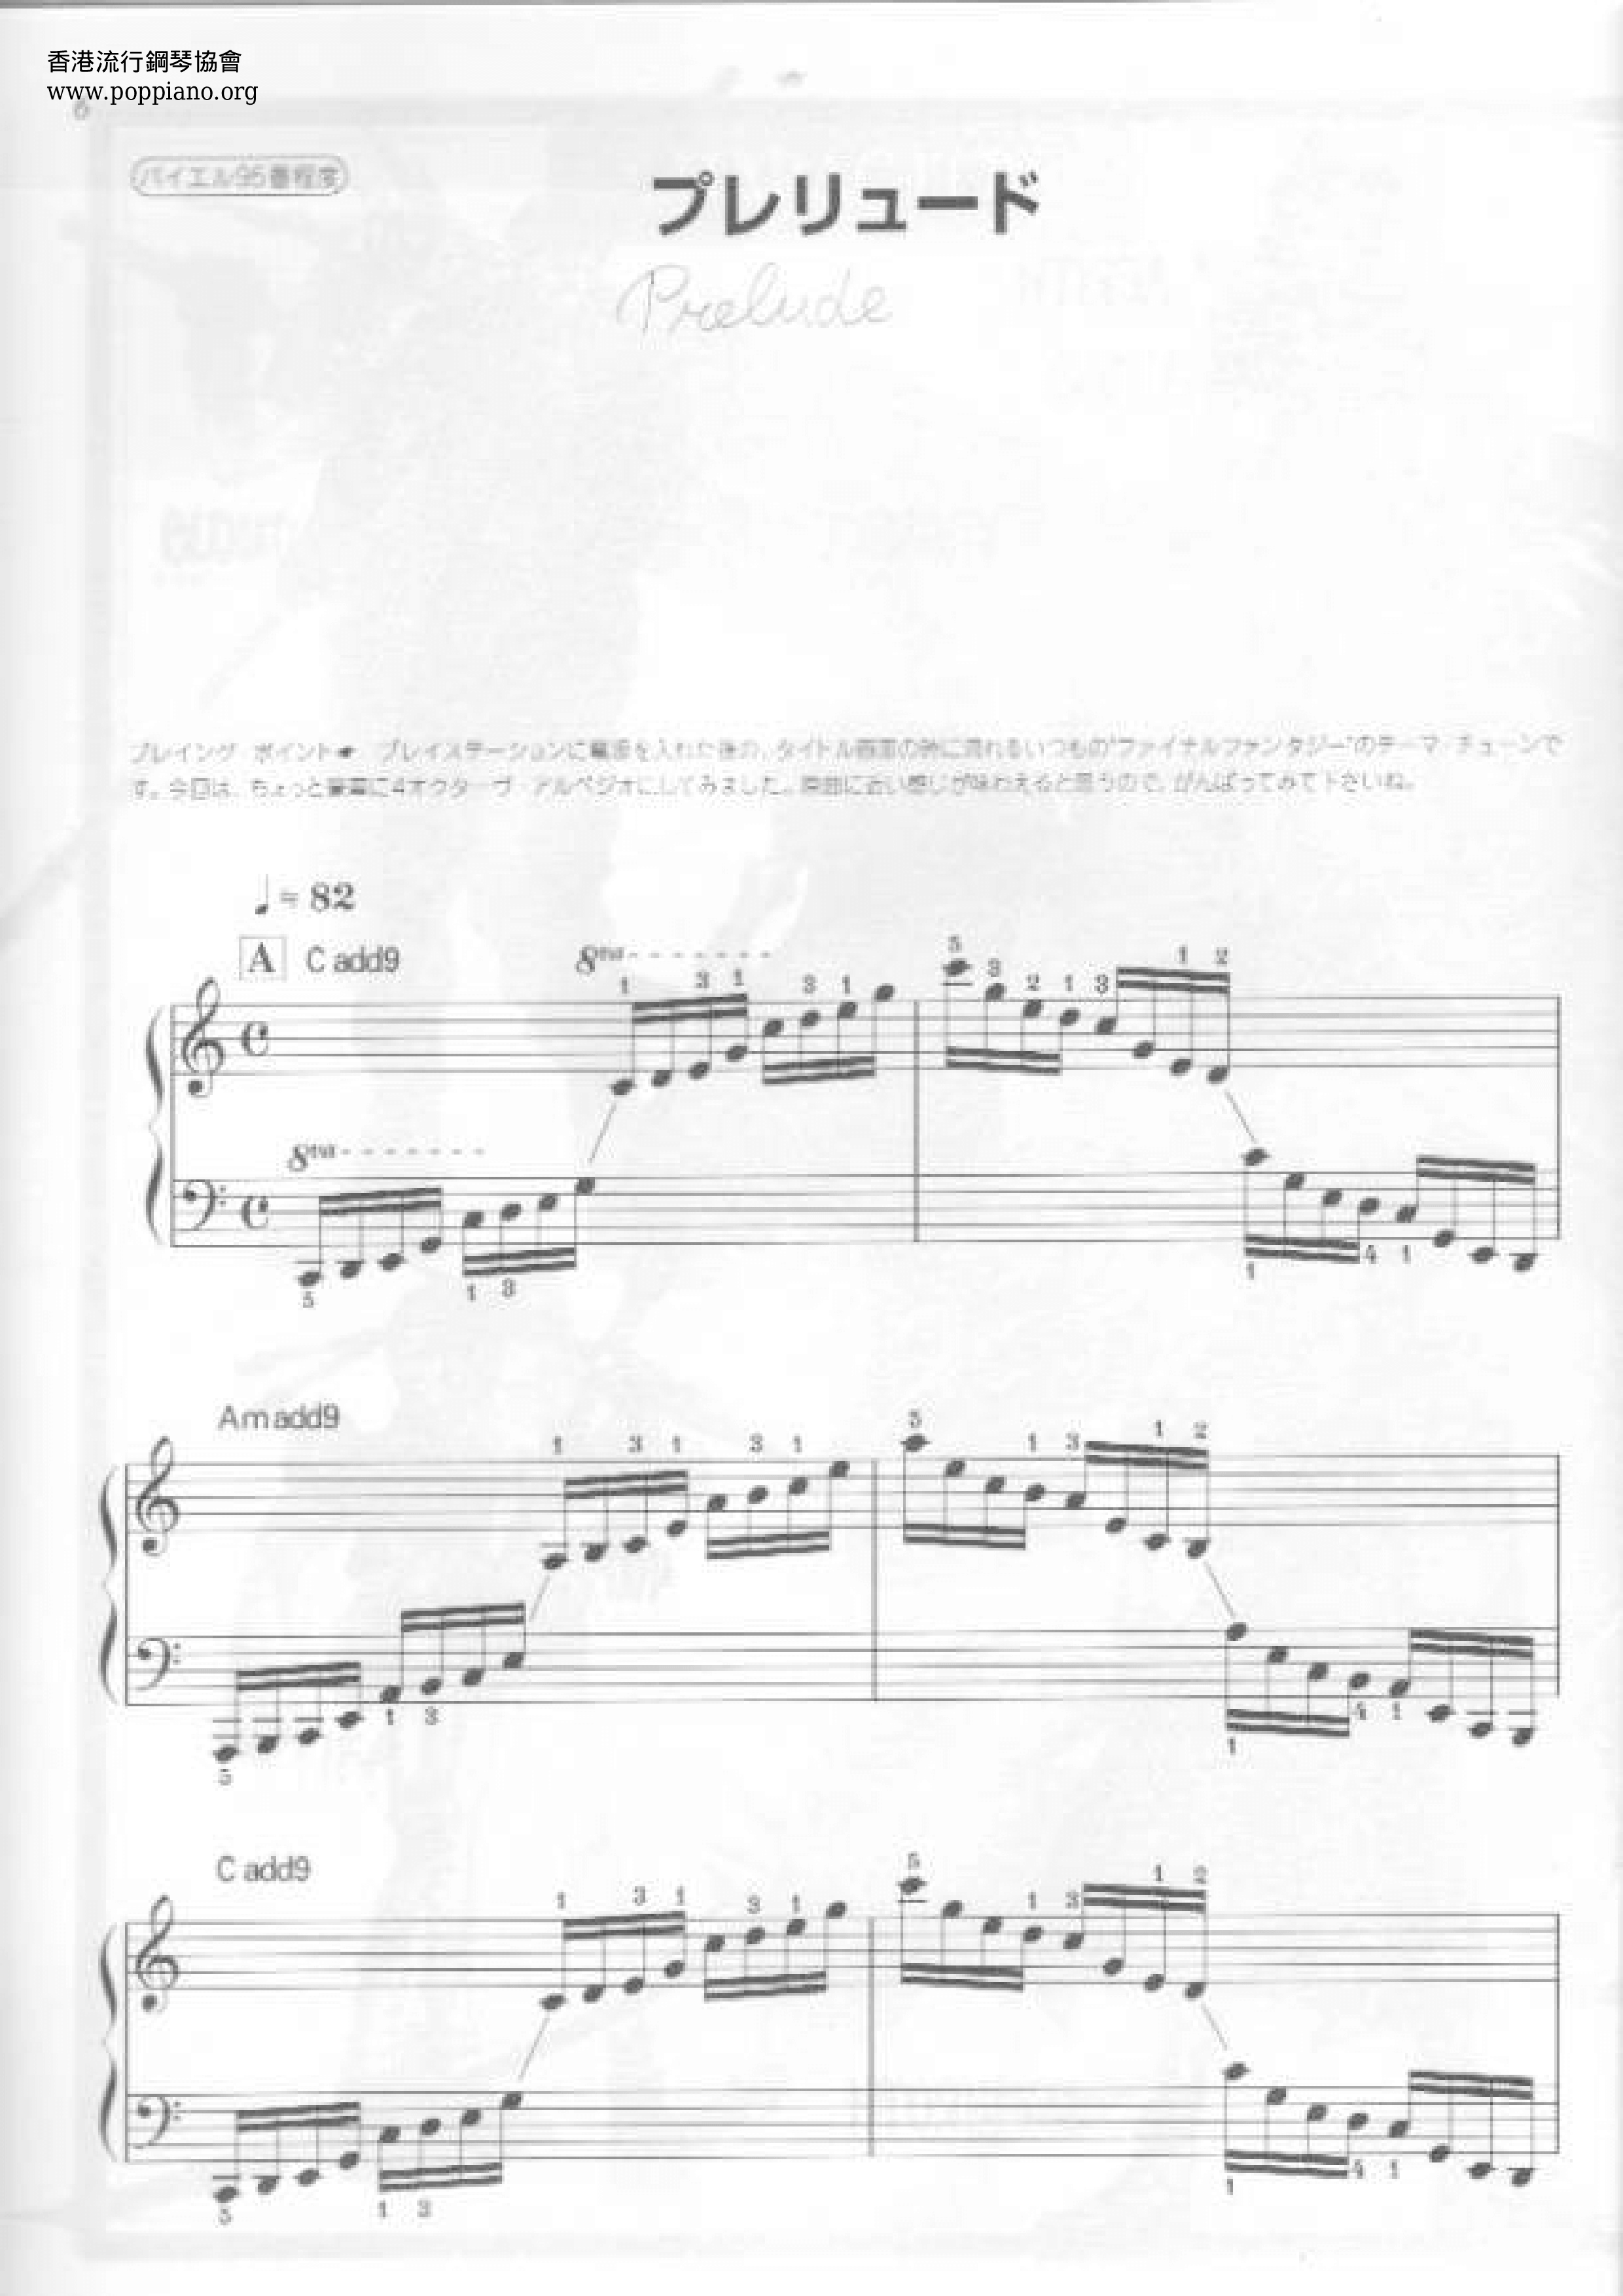 ファイナルファンタジーシリーズ 7 Prelude ピアノ譜pdf 香港ポップピアノ協会 無料pdf楽譜ダウンロード Gakufu